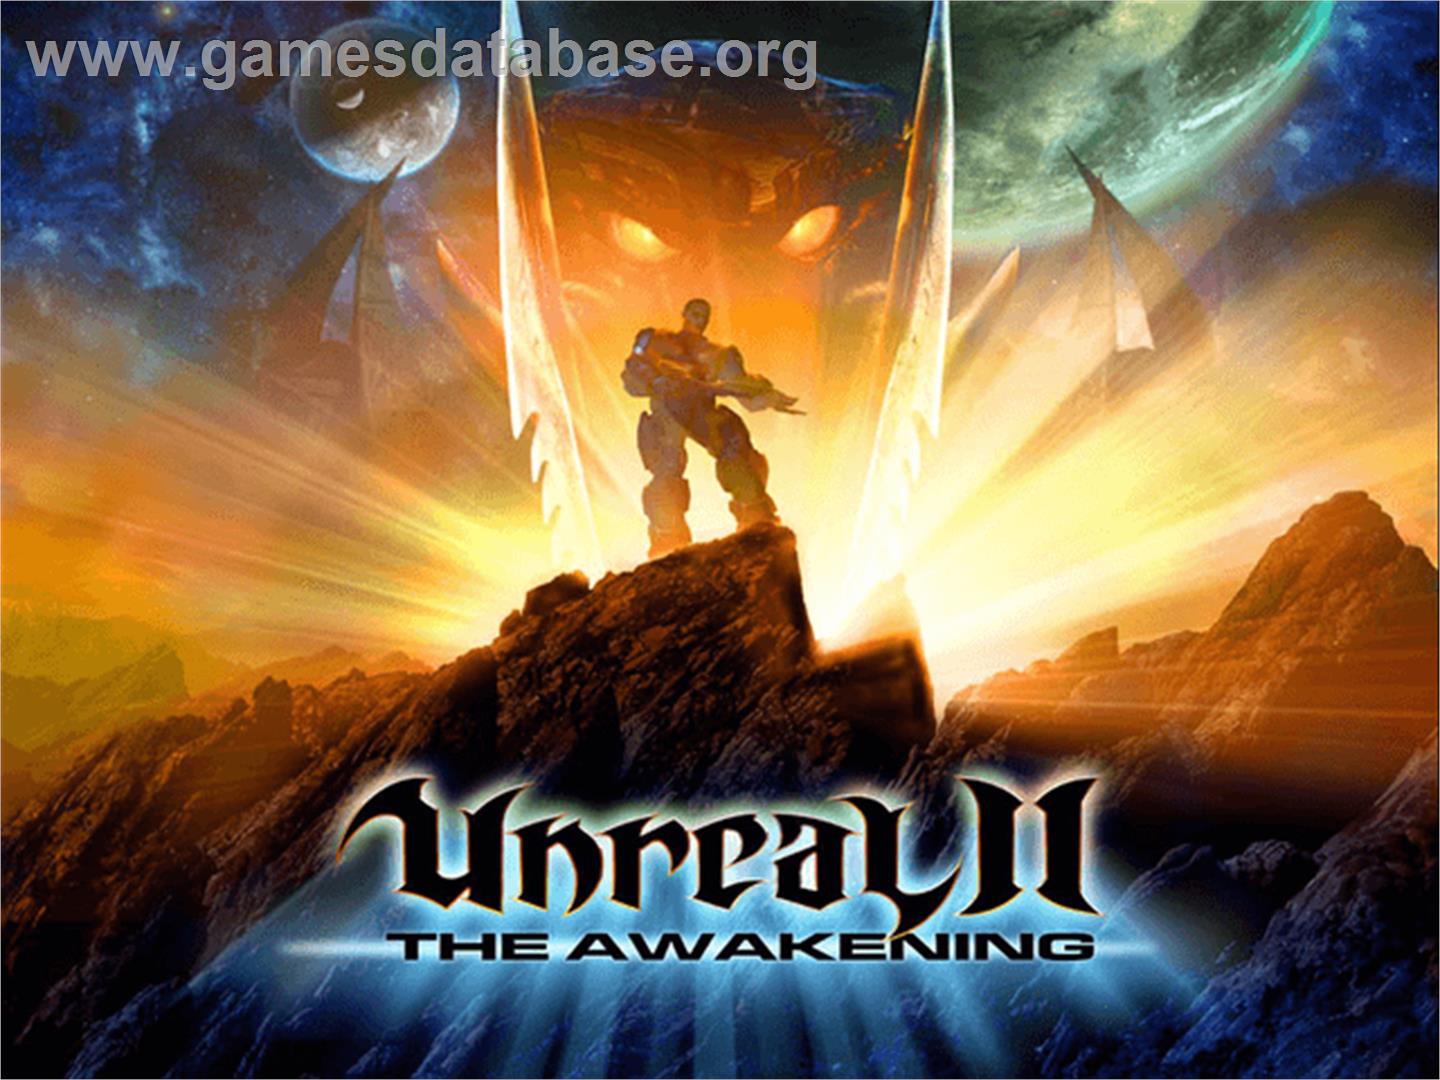 Unreal II: The Awakening - Microsoft Xbox - Artwork - Title Screen